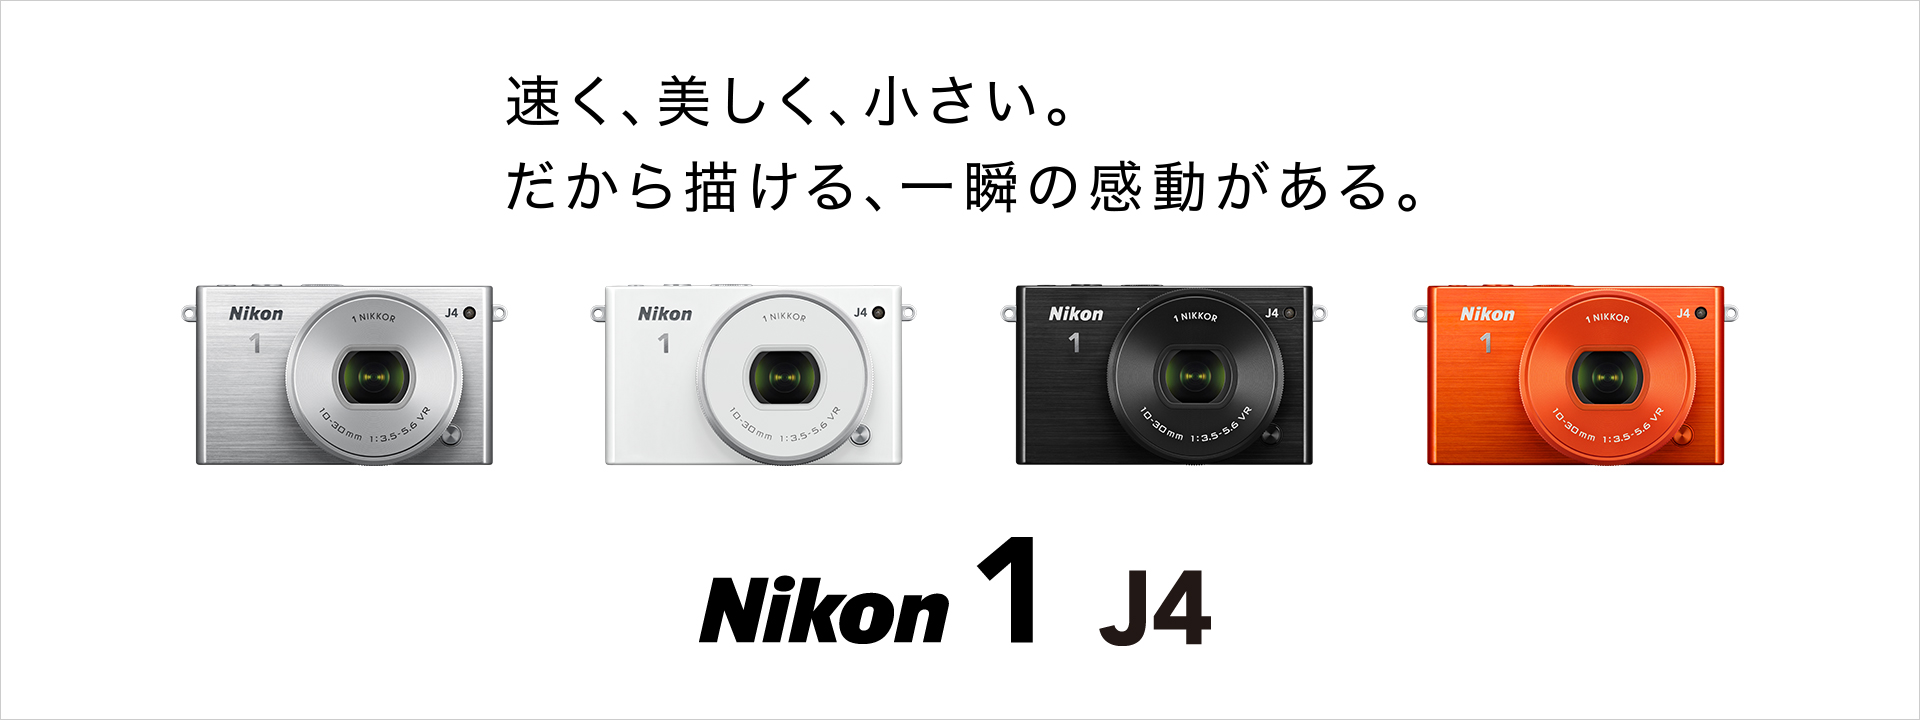 Nikon 1 J4 - 概要 | ミラーレスカメラ | ニコンイメージング